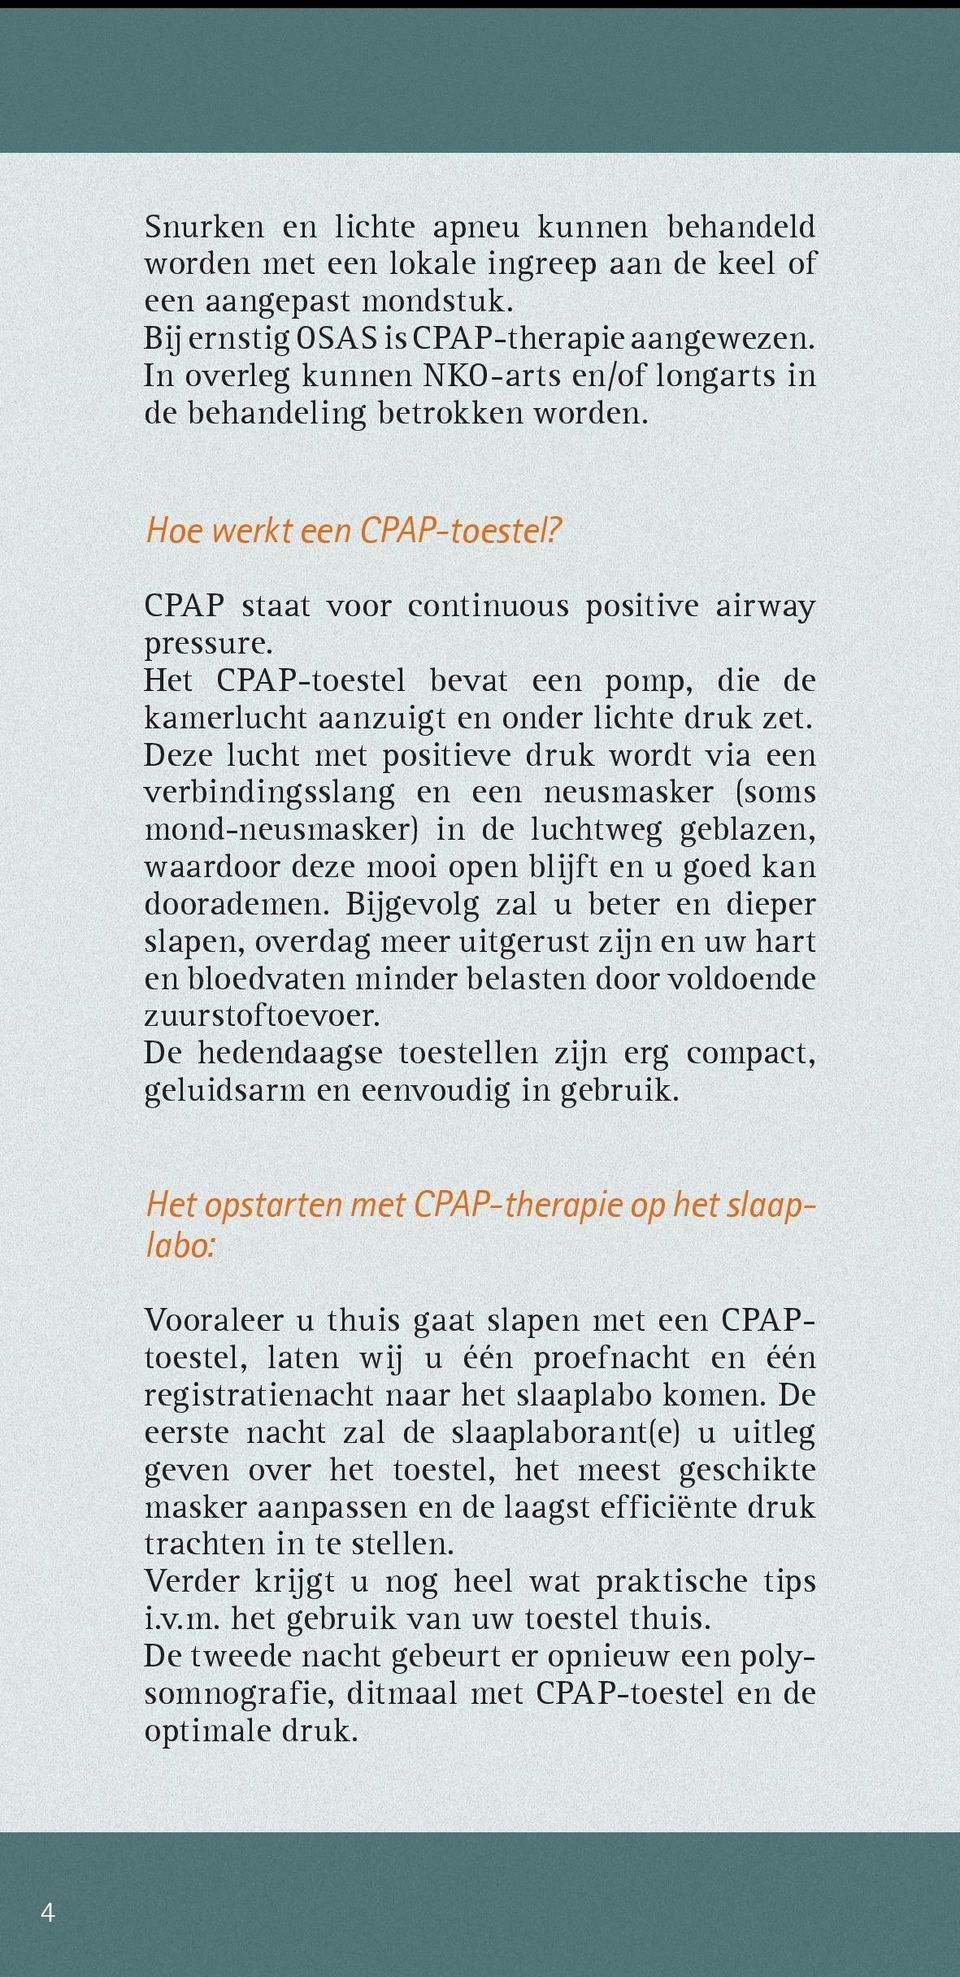 Het CPAP-toestel bevat een pomp, die de kamerlucht aanzuigt en onder lichte druk zet.